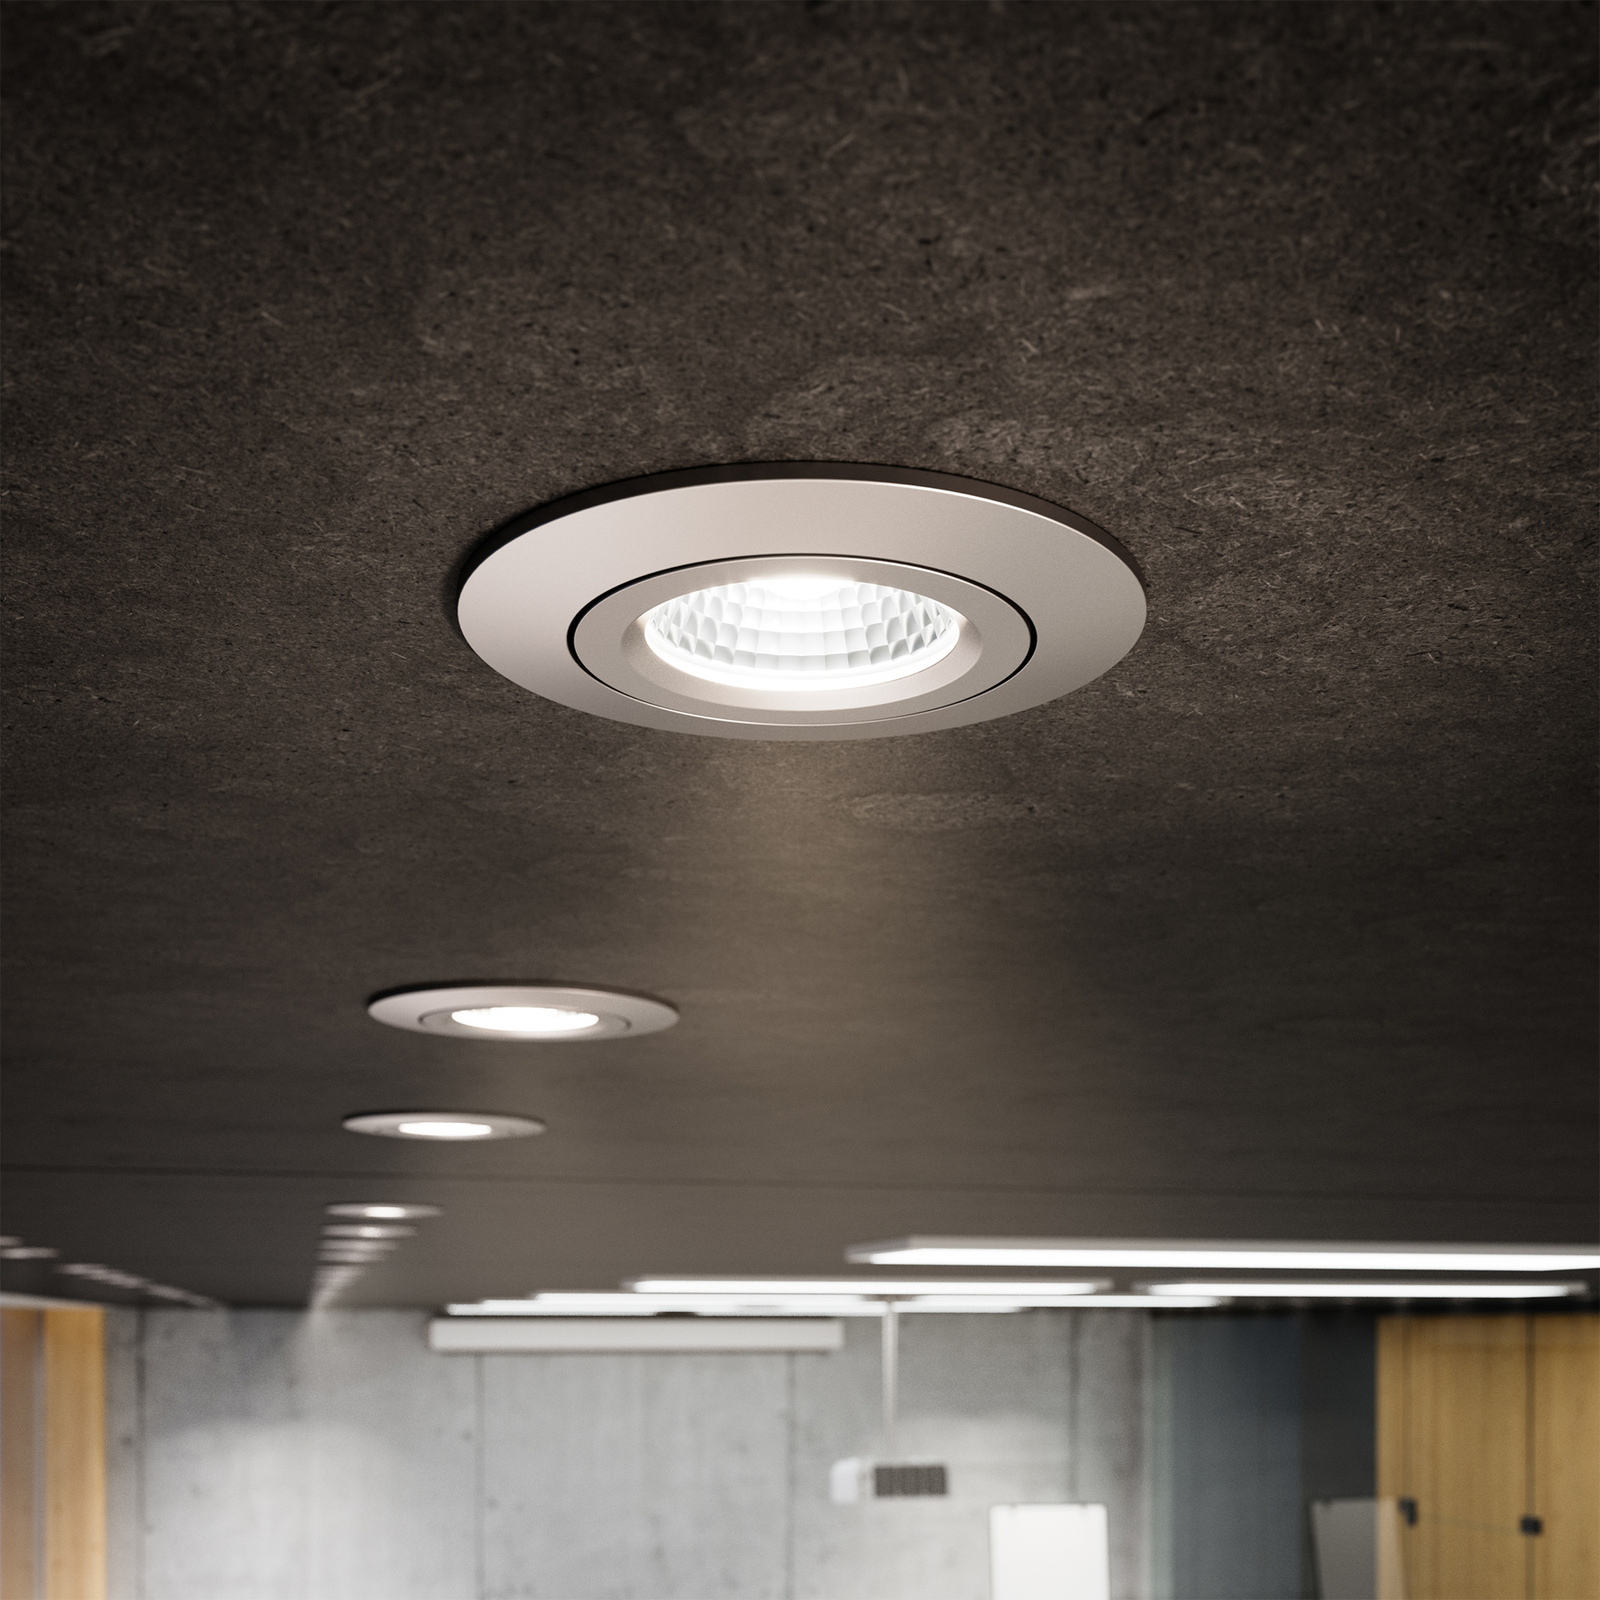 LED spot da incasso a soffitto Diled, Ø 8,5 cm, 10 W, 3.000 K, acciaio